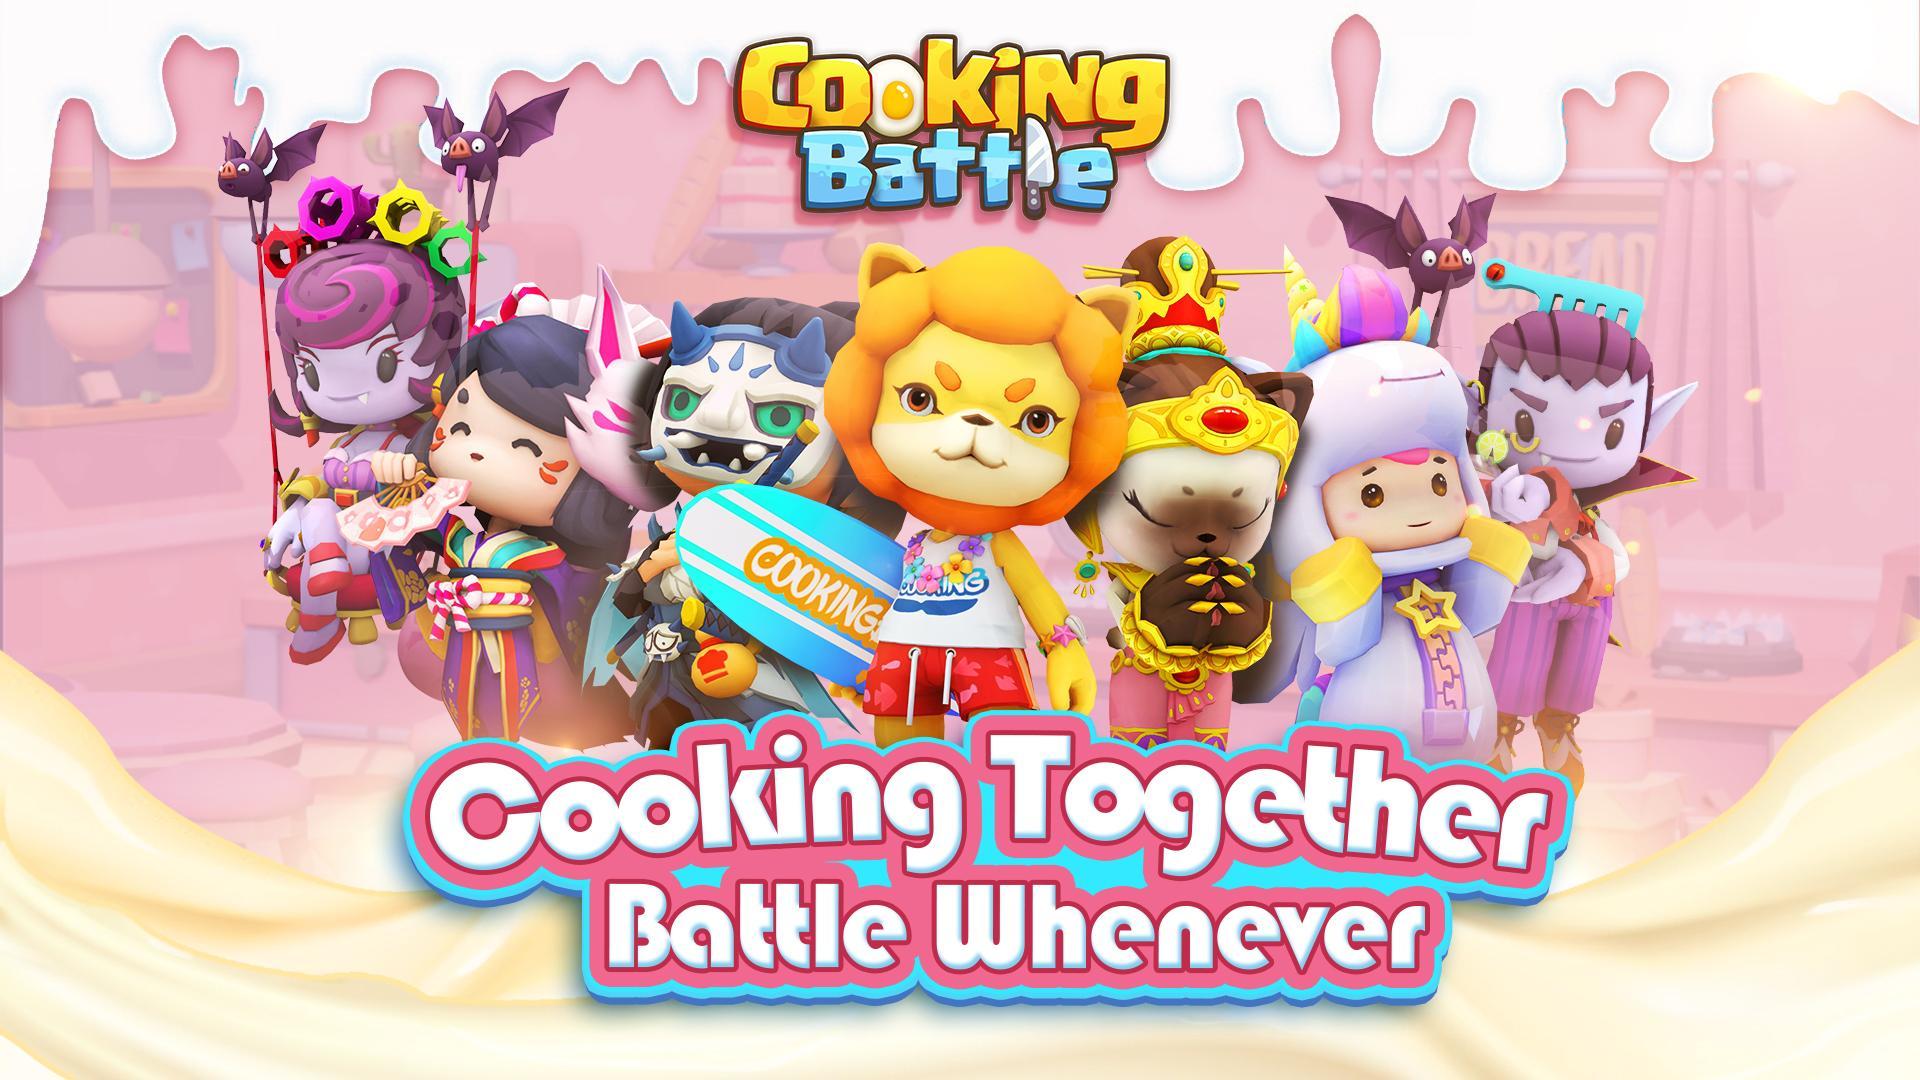 Screenshot 1 of खाना पकाने की लड़ाई! 